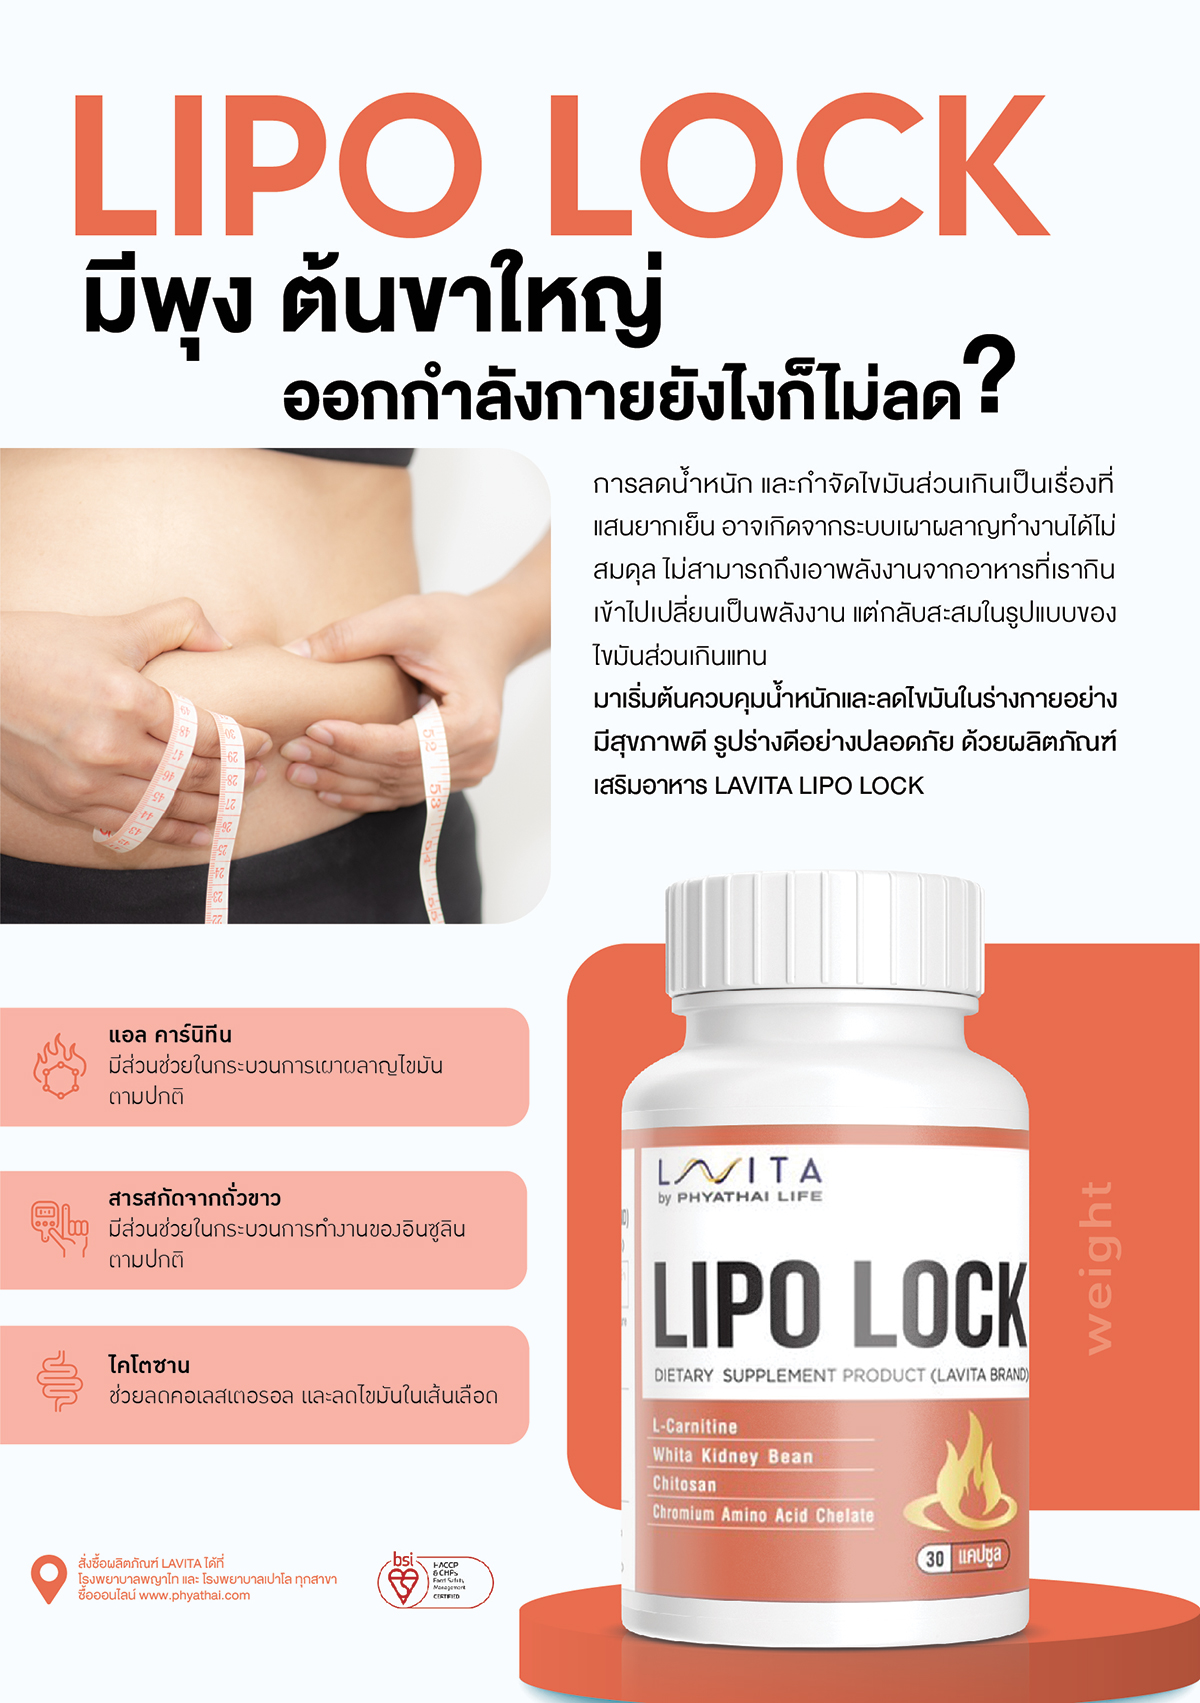 LIPO LOCK มีส่วนช่วยในกระบวนการเผาผลาญไขมันตามปกติ